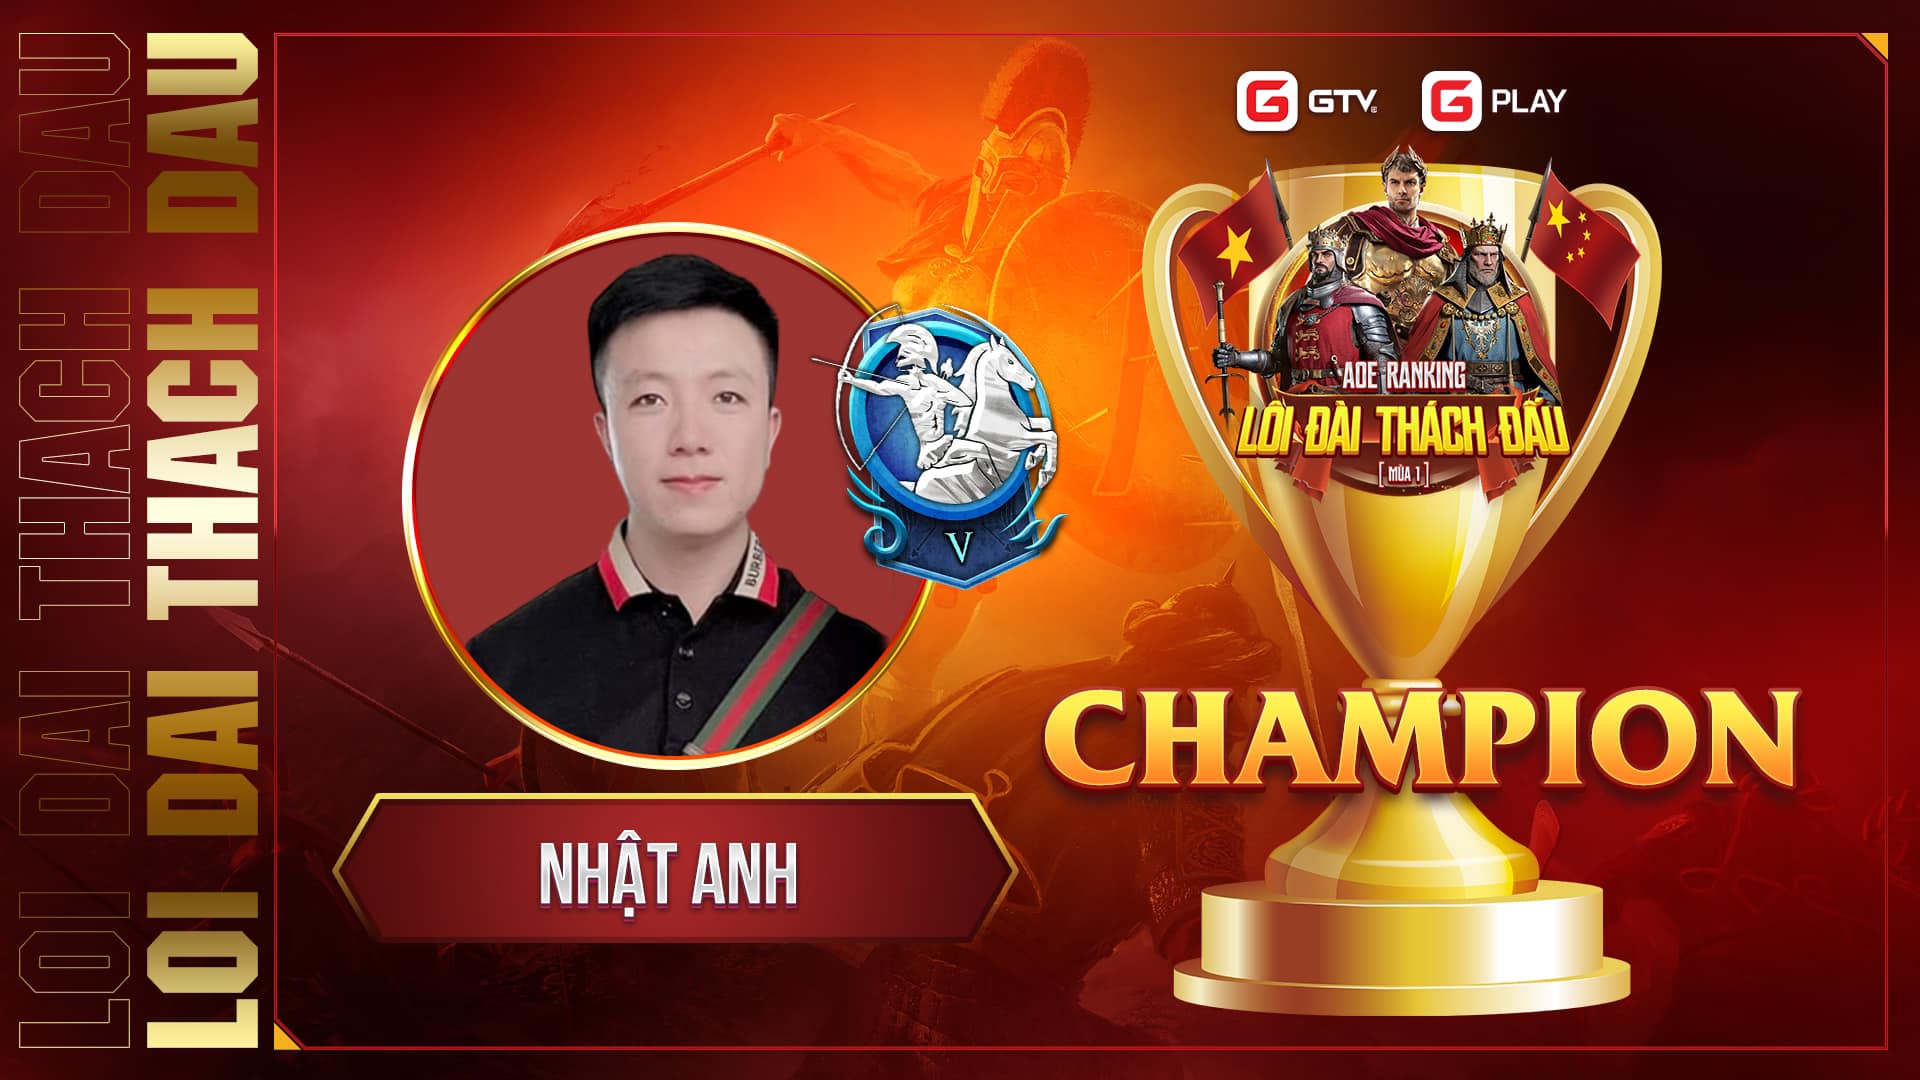 Nhật Anh vô địch AOE Ranking Việt - Trung: Lôi Đài Thách Đấu